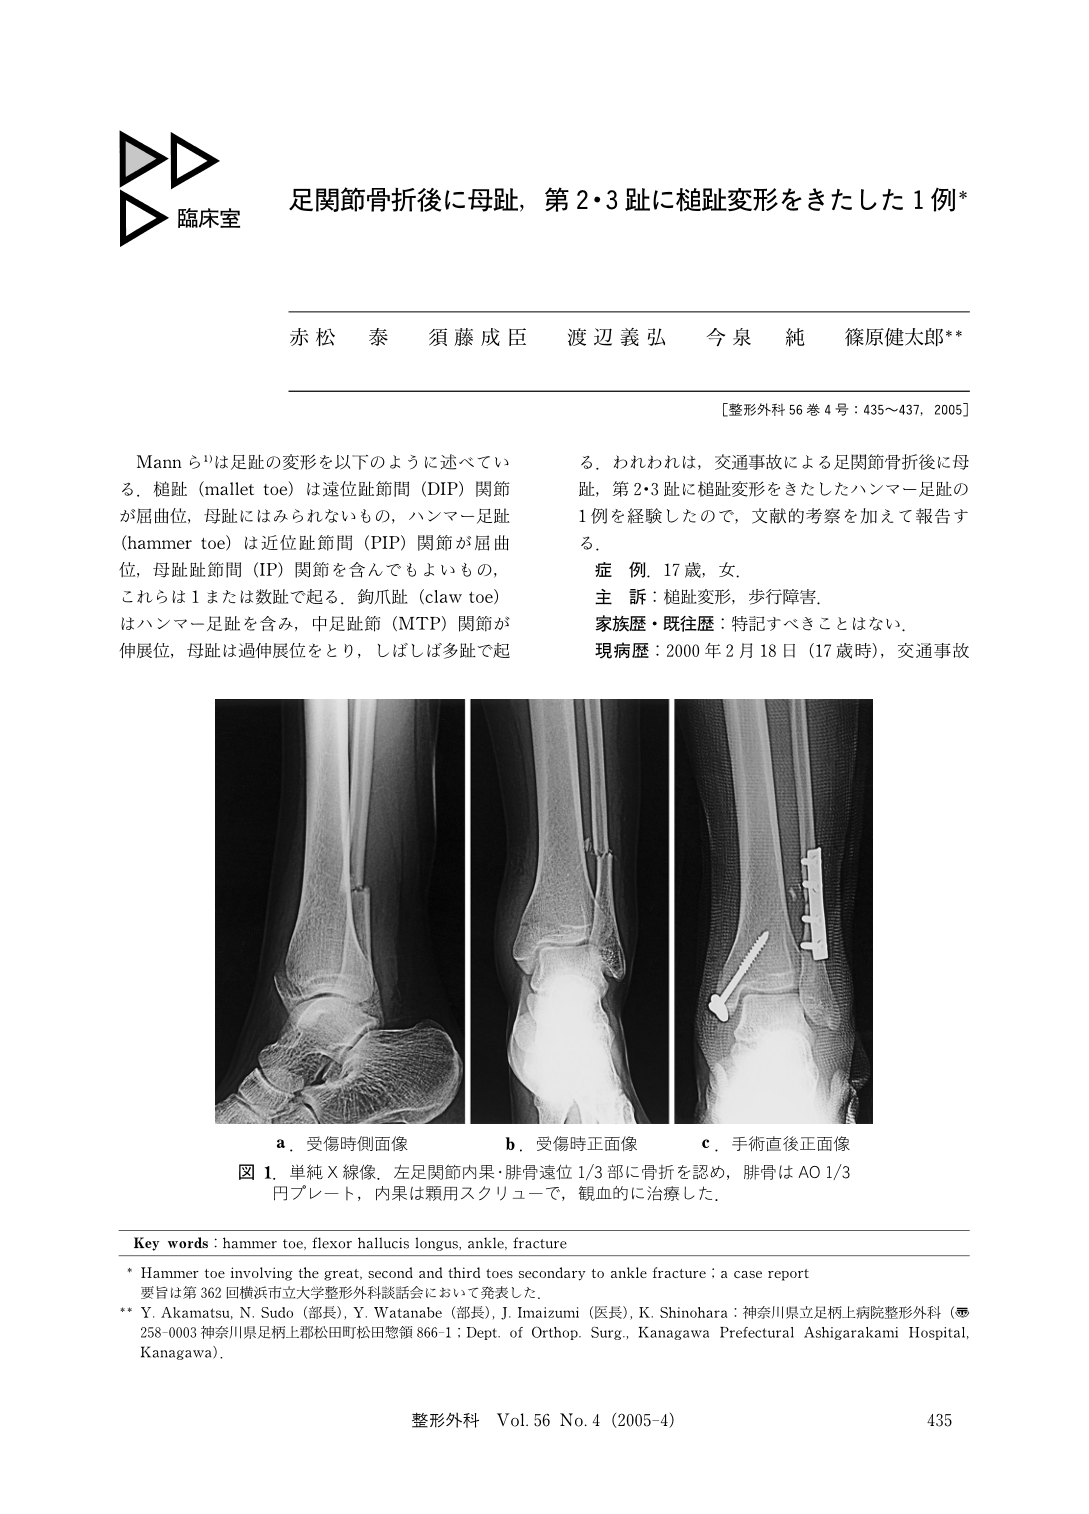 足関節骨折後に母趾 第2 3趾に槌趾変形をきたした1例 臨床雑誌整形外科 56巻4号 医書 Jp